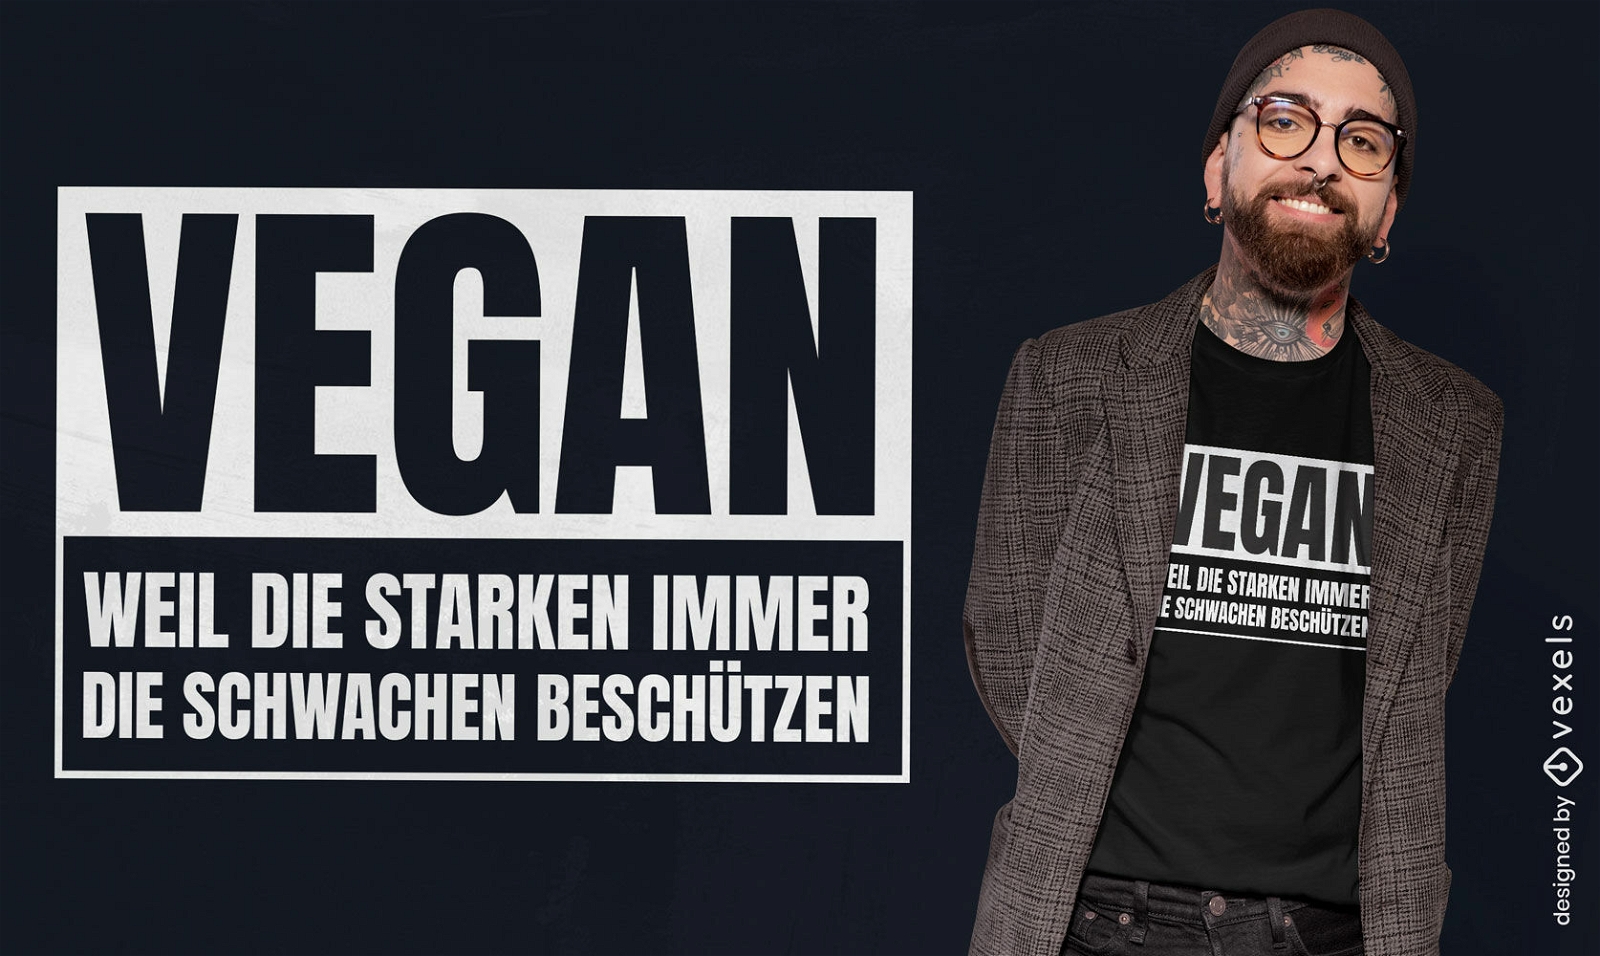 Dise?o de camiseta alemana con cita vegana.